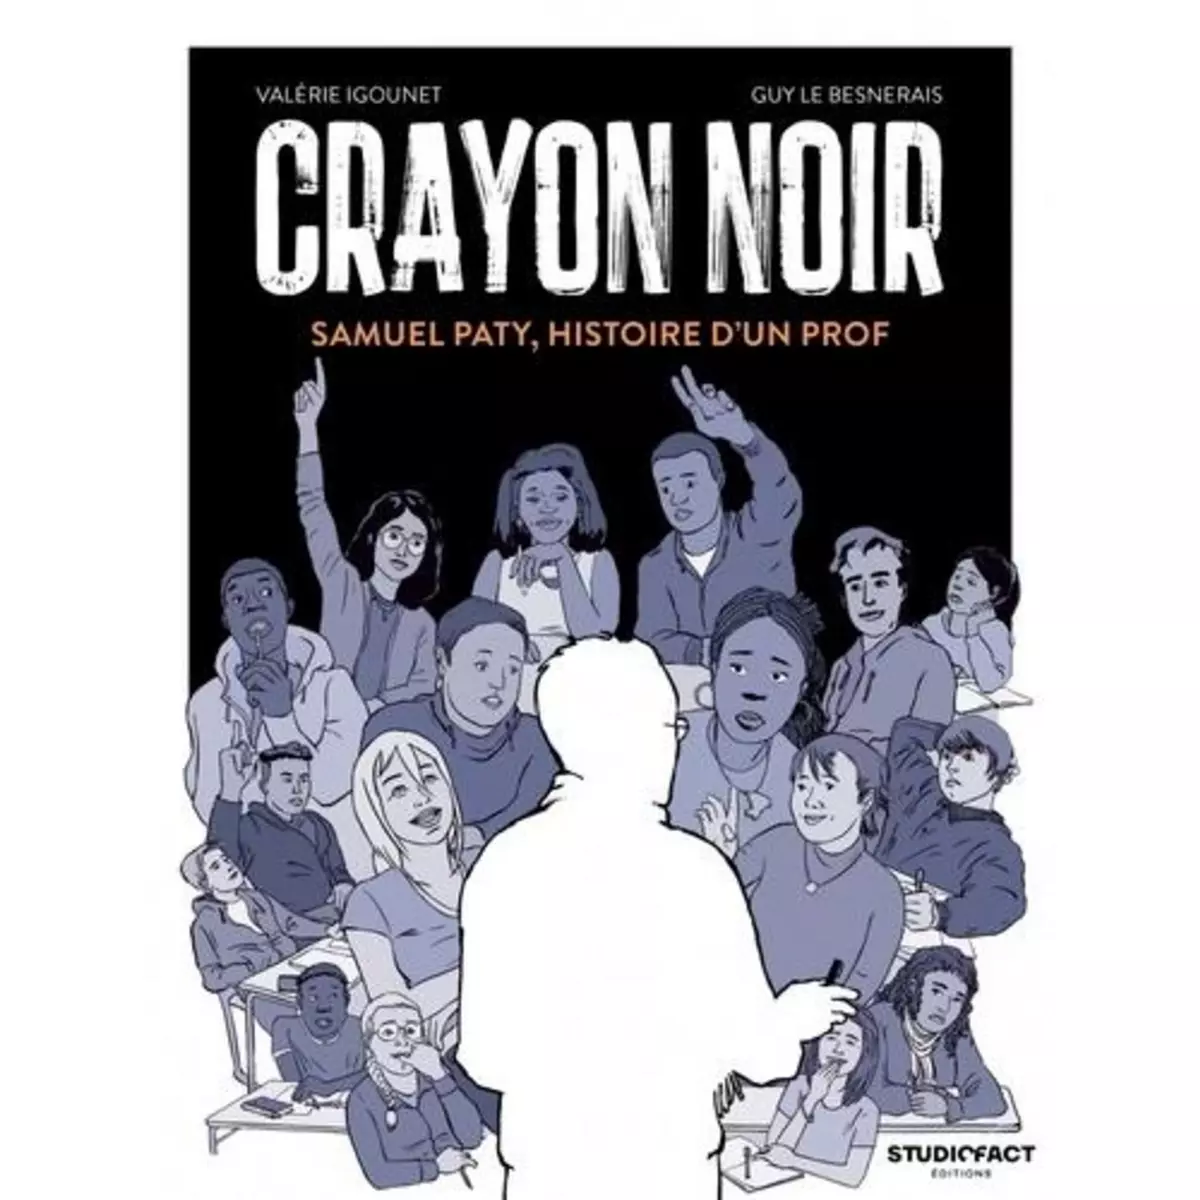  CRAYON NOIR. SAMUEL PATY, HISTOIRE D'UN PROF, Igounet Valérie